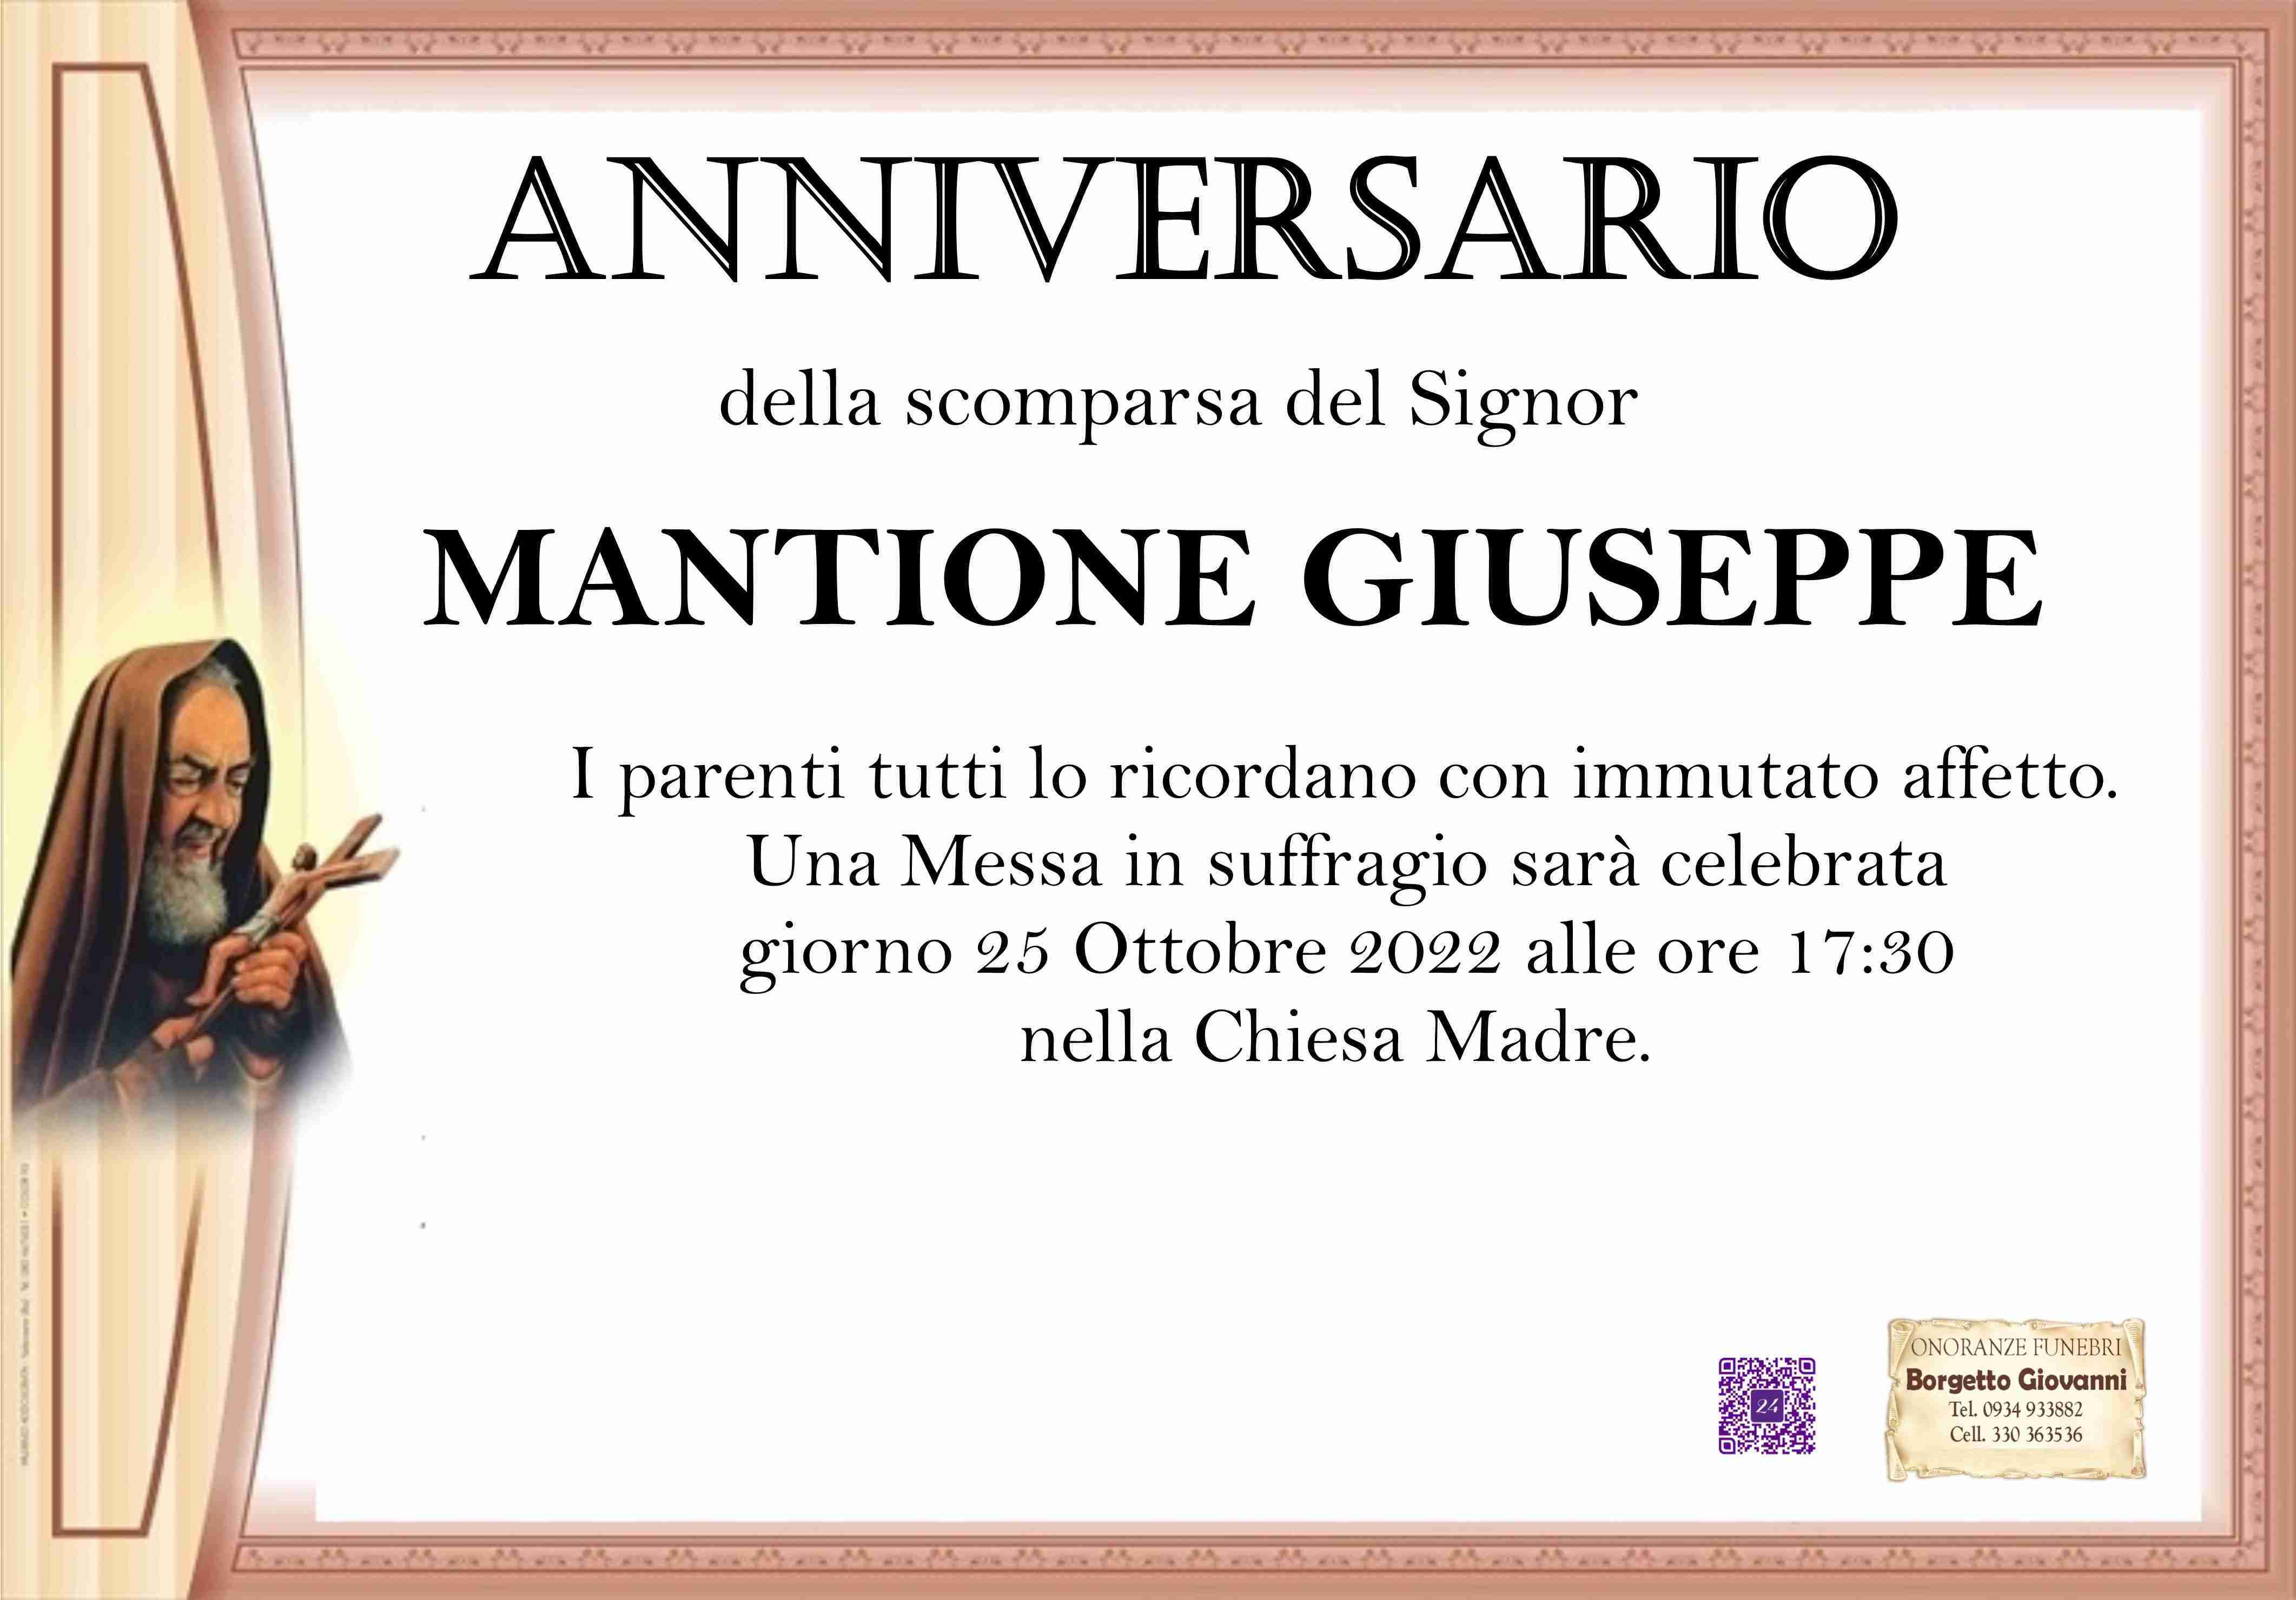 Giuseppe Mantione